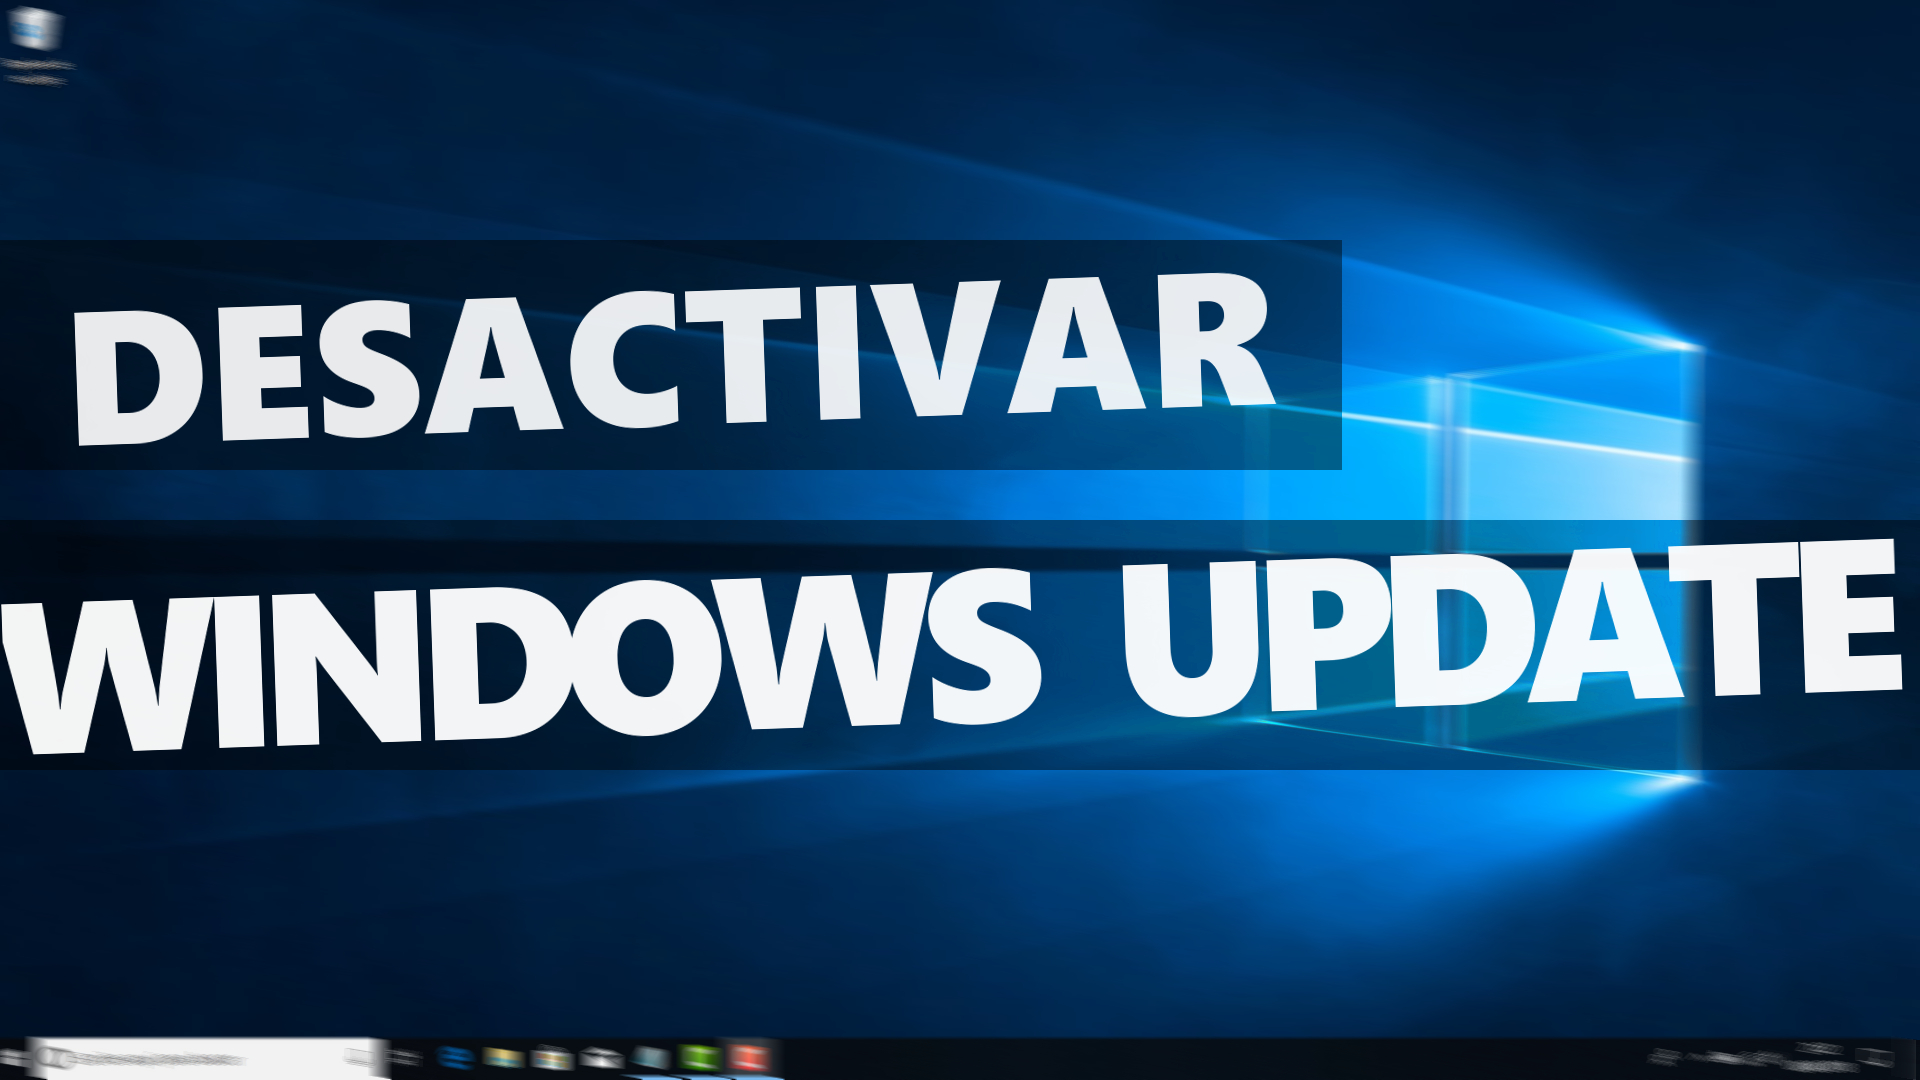 Desactivar las actualizaciones automáticas en Windows 10 – Desactivar Windows Update